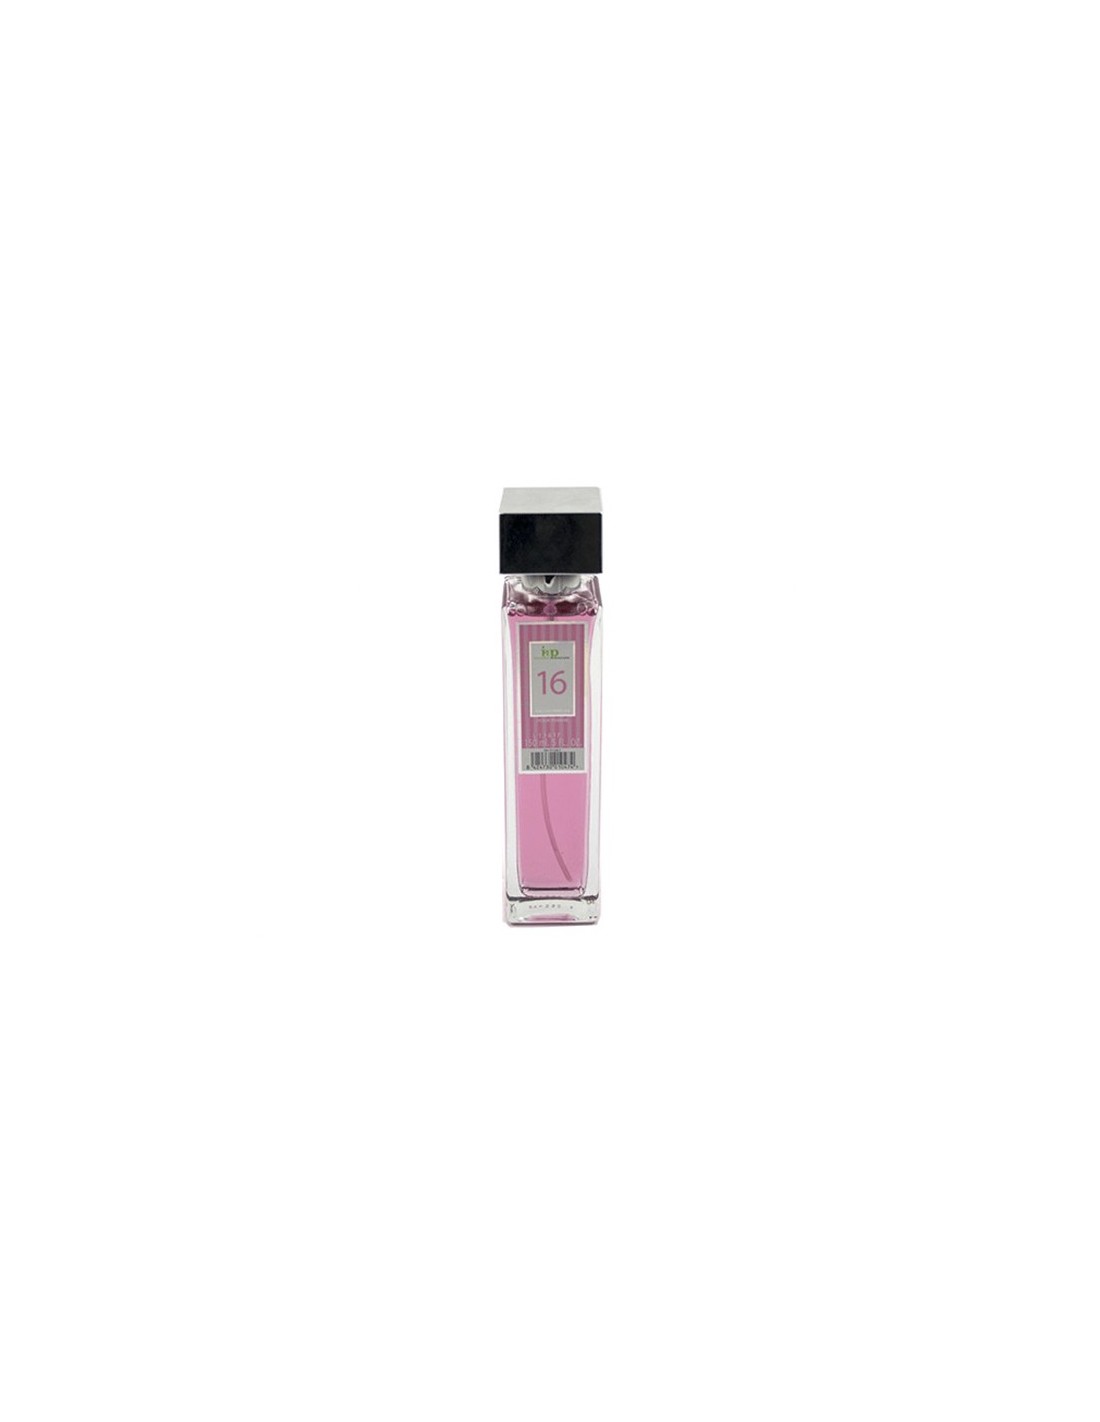 IAP Perfume Mujer N16 150ml